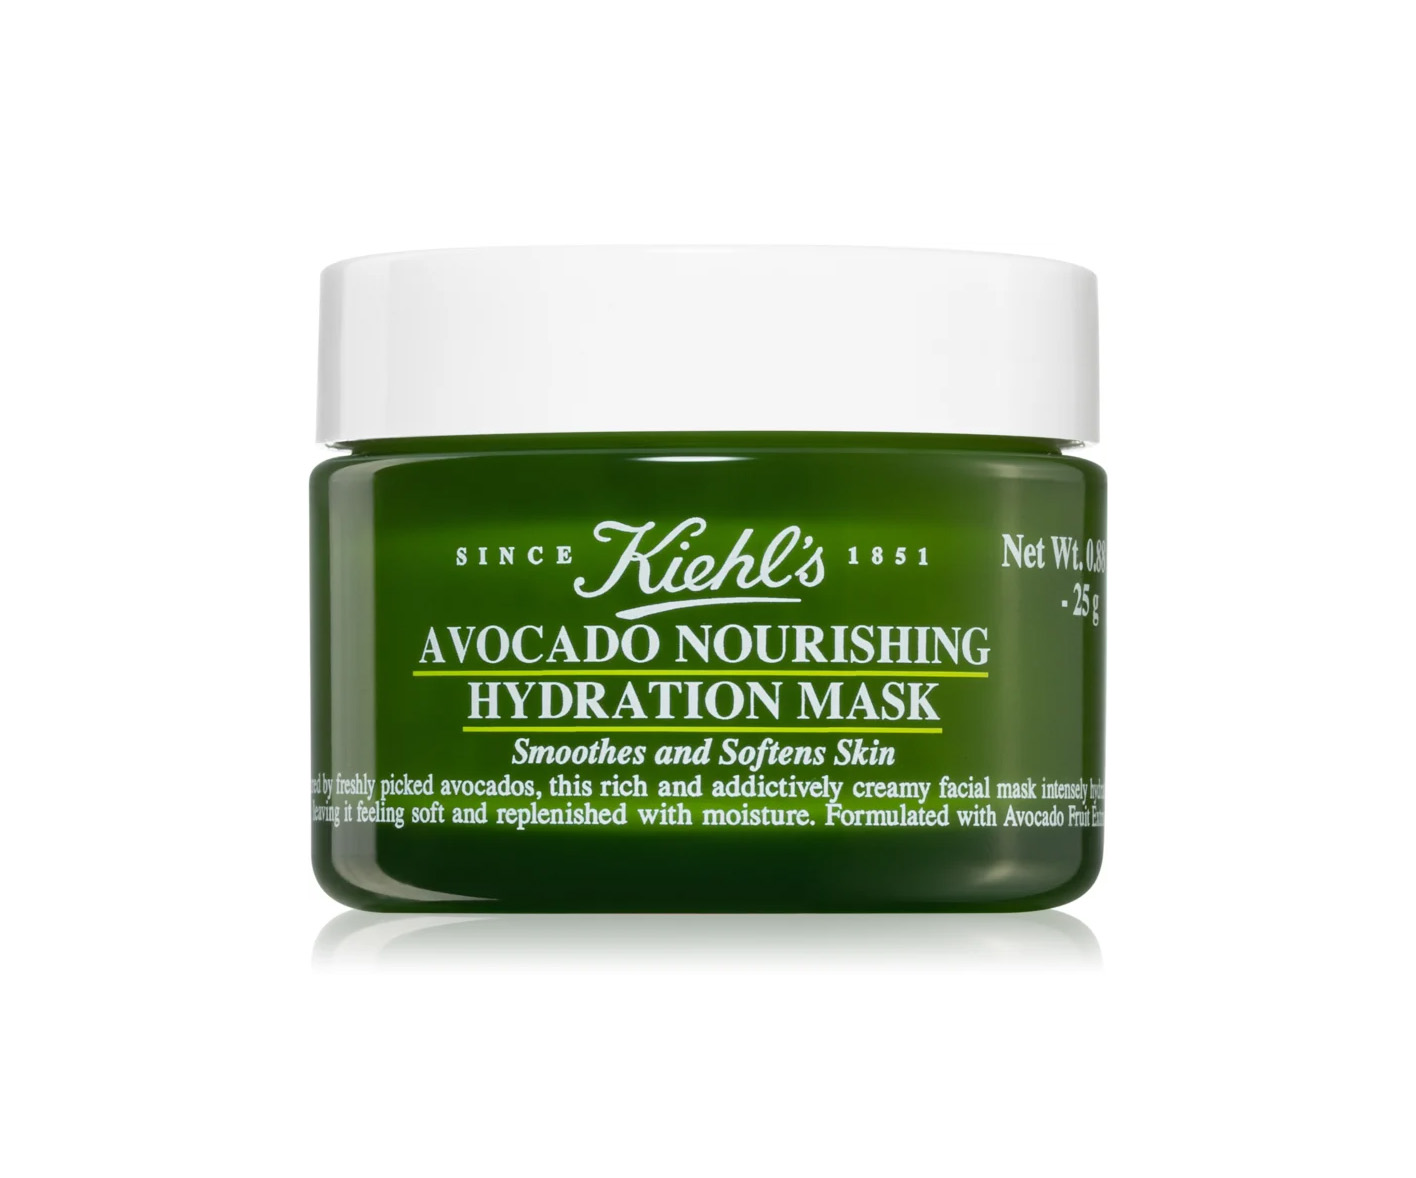 Kiehl’s Avocado Nourishing Hydration Mask, maseczka z awokado